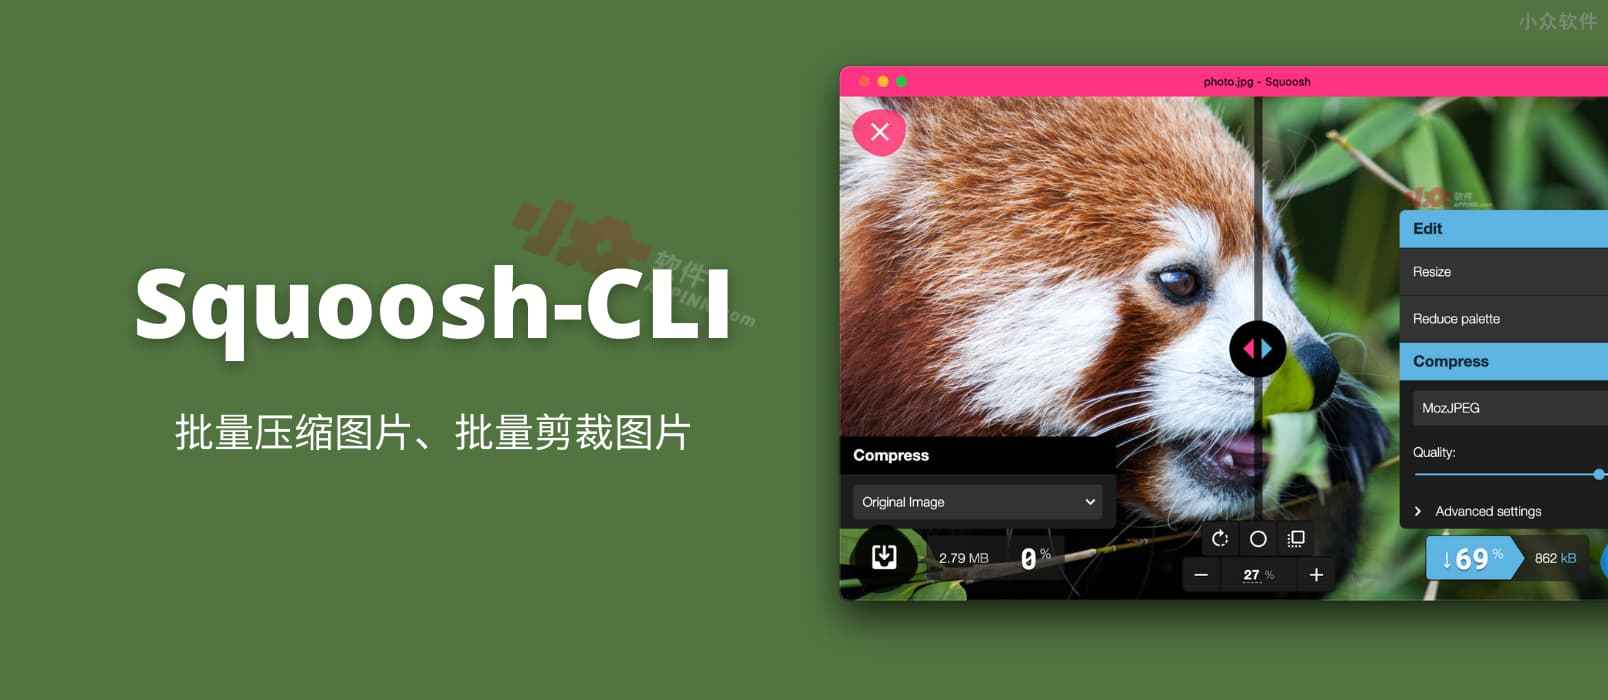 Squoosh-CLI - 批量图片压缩、批量图片格式转换、批量图片剪裁